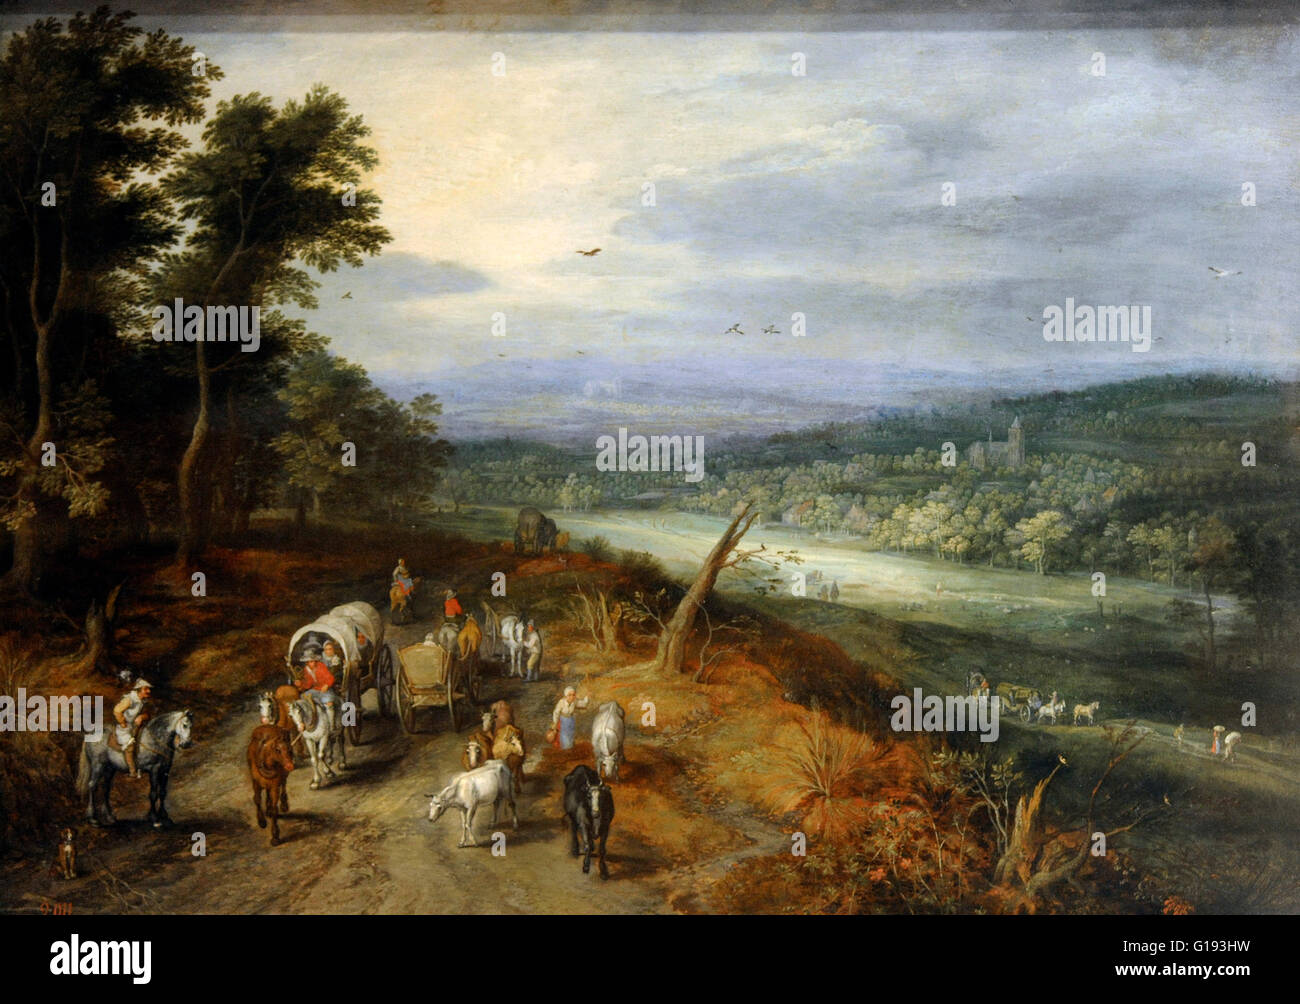 Jan Brueghel l'ancien (Brueghel de Velours). 1568-1625. Peintre flamand. Route de campagne. Huile sur panneau. Baroque. Le Musée de l'Ermitage. Saint Petersburg. La Russie. Banque D'Images